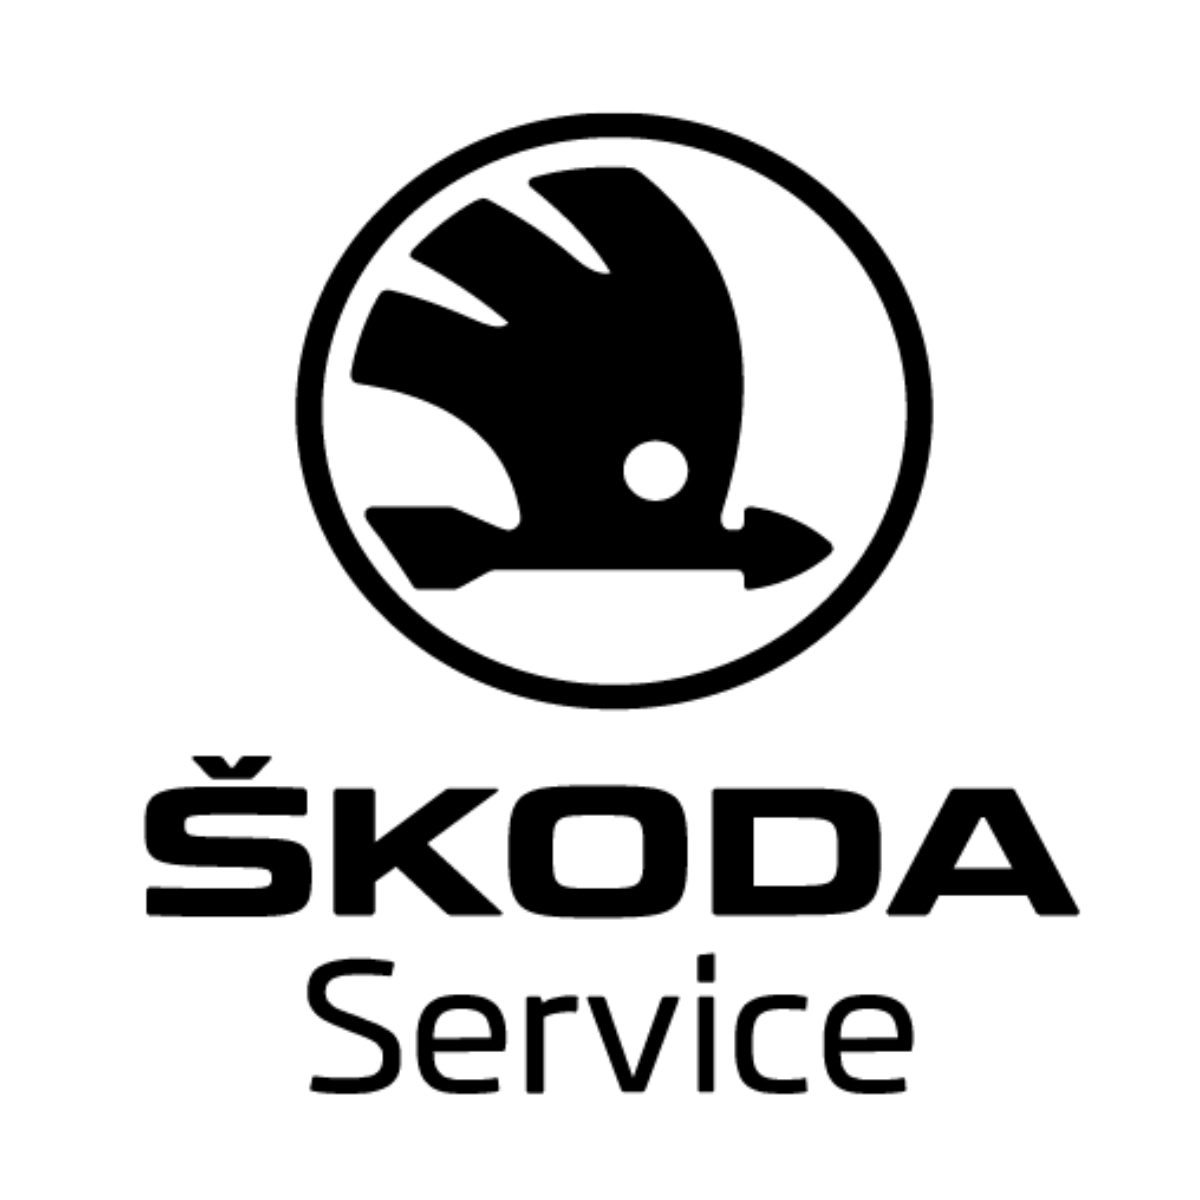 Logo von Skoda